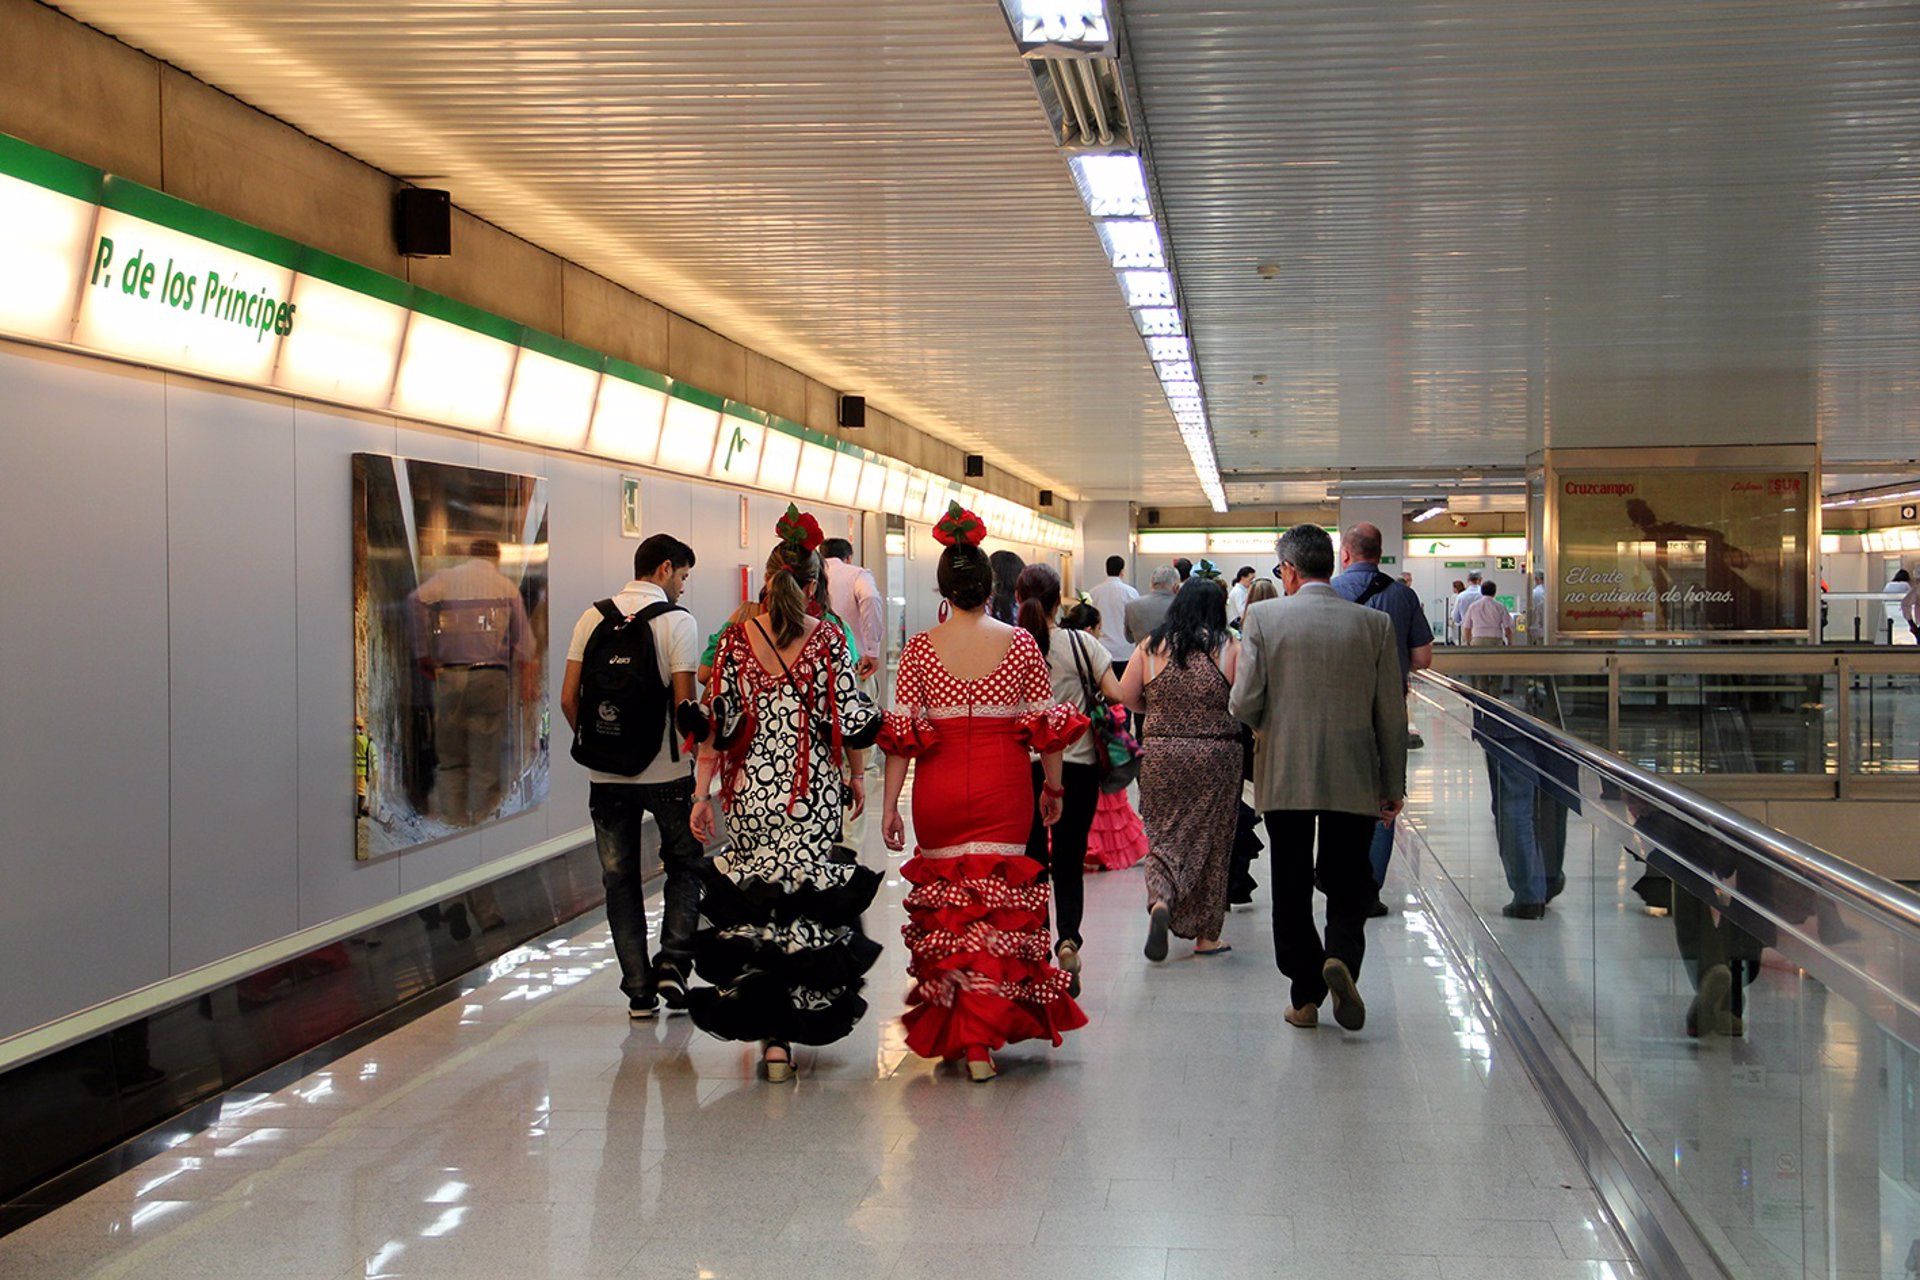  Mujeres vestidas de flamenca en una estación de Metro en Sevilla.